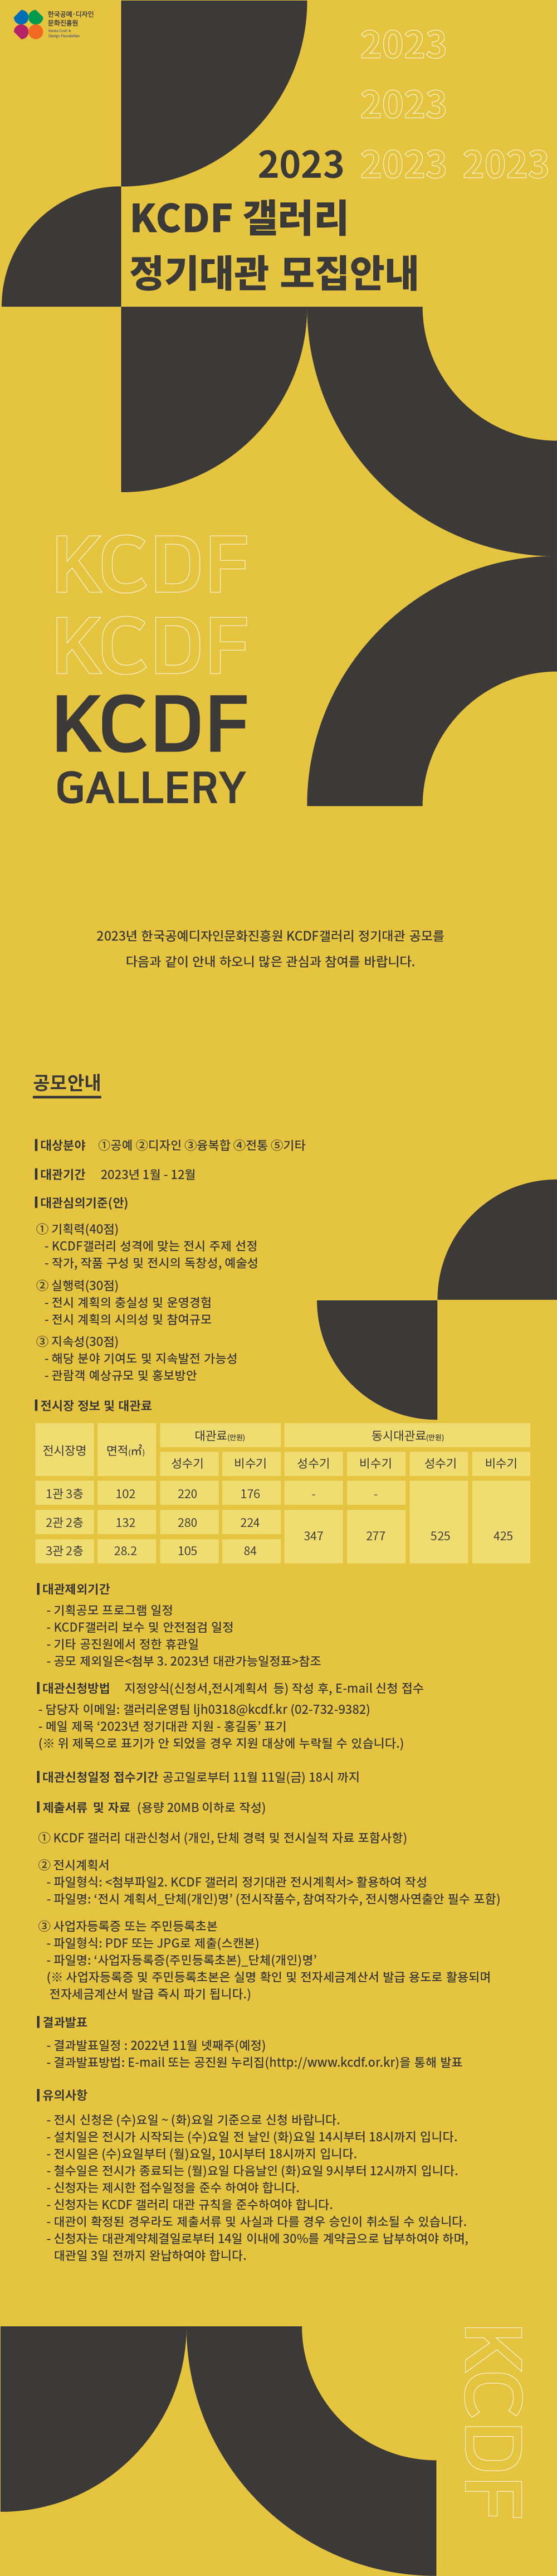 2023년 KCDF갤러리 정기대관 모집안내